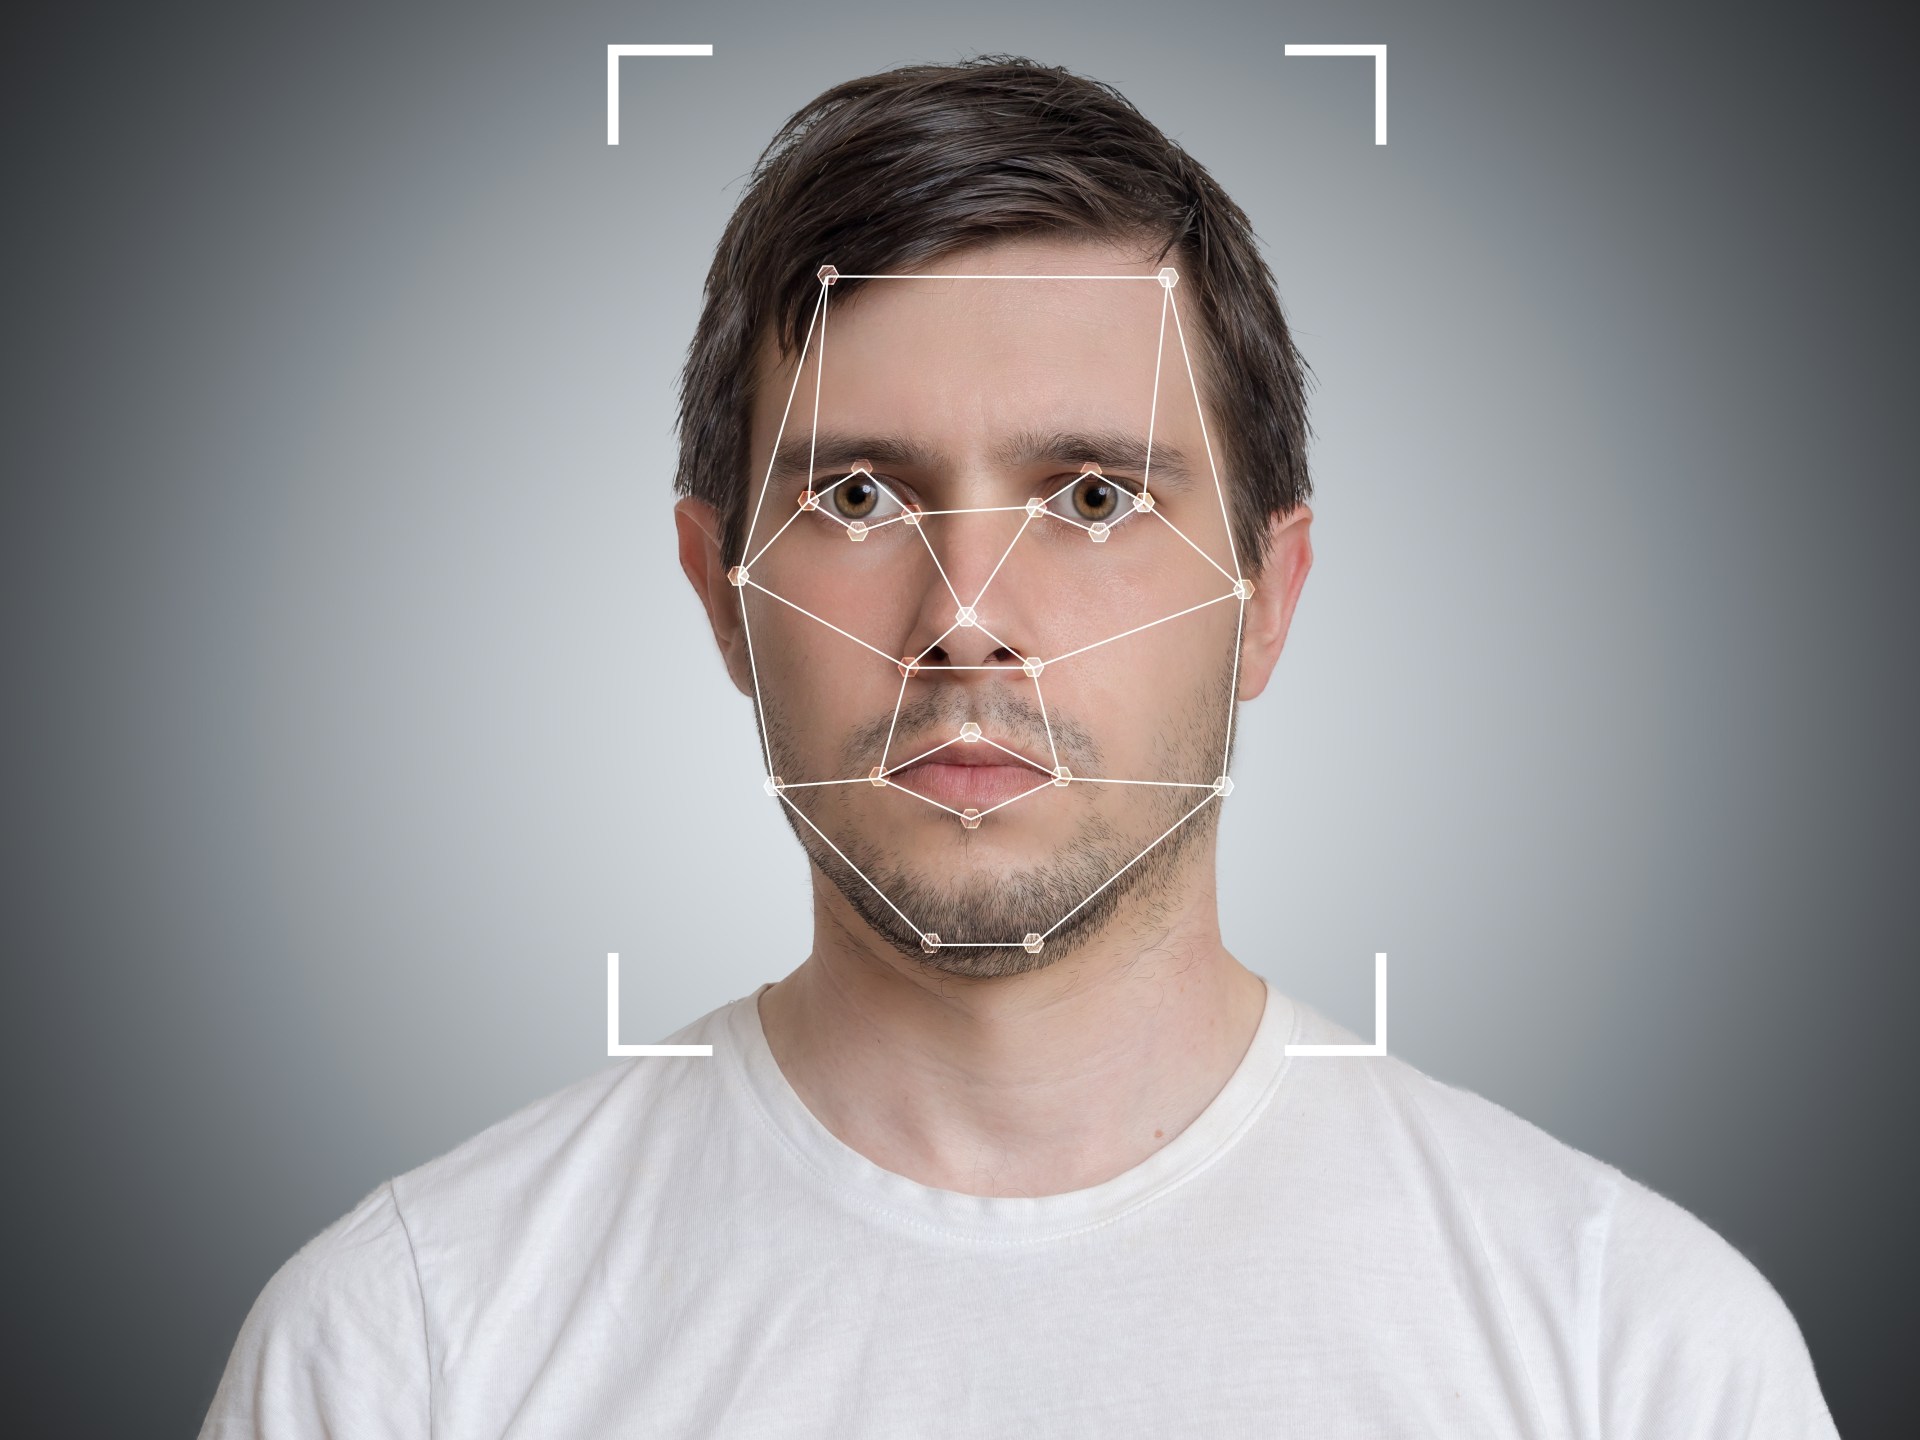 تقنية التعرف على الوجوه.. لماذا تستحوذ على الاهتمام ببريطانيا؟ | تكنولوجيا – البوكس نيوز